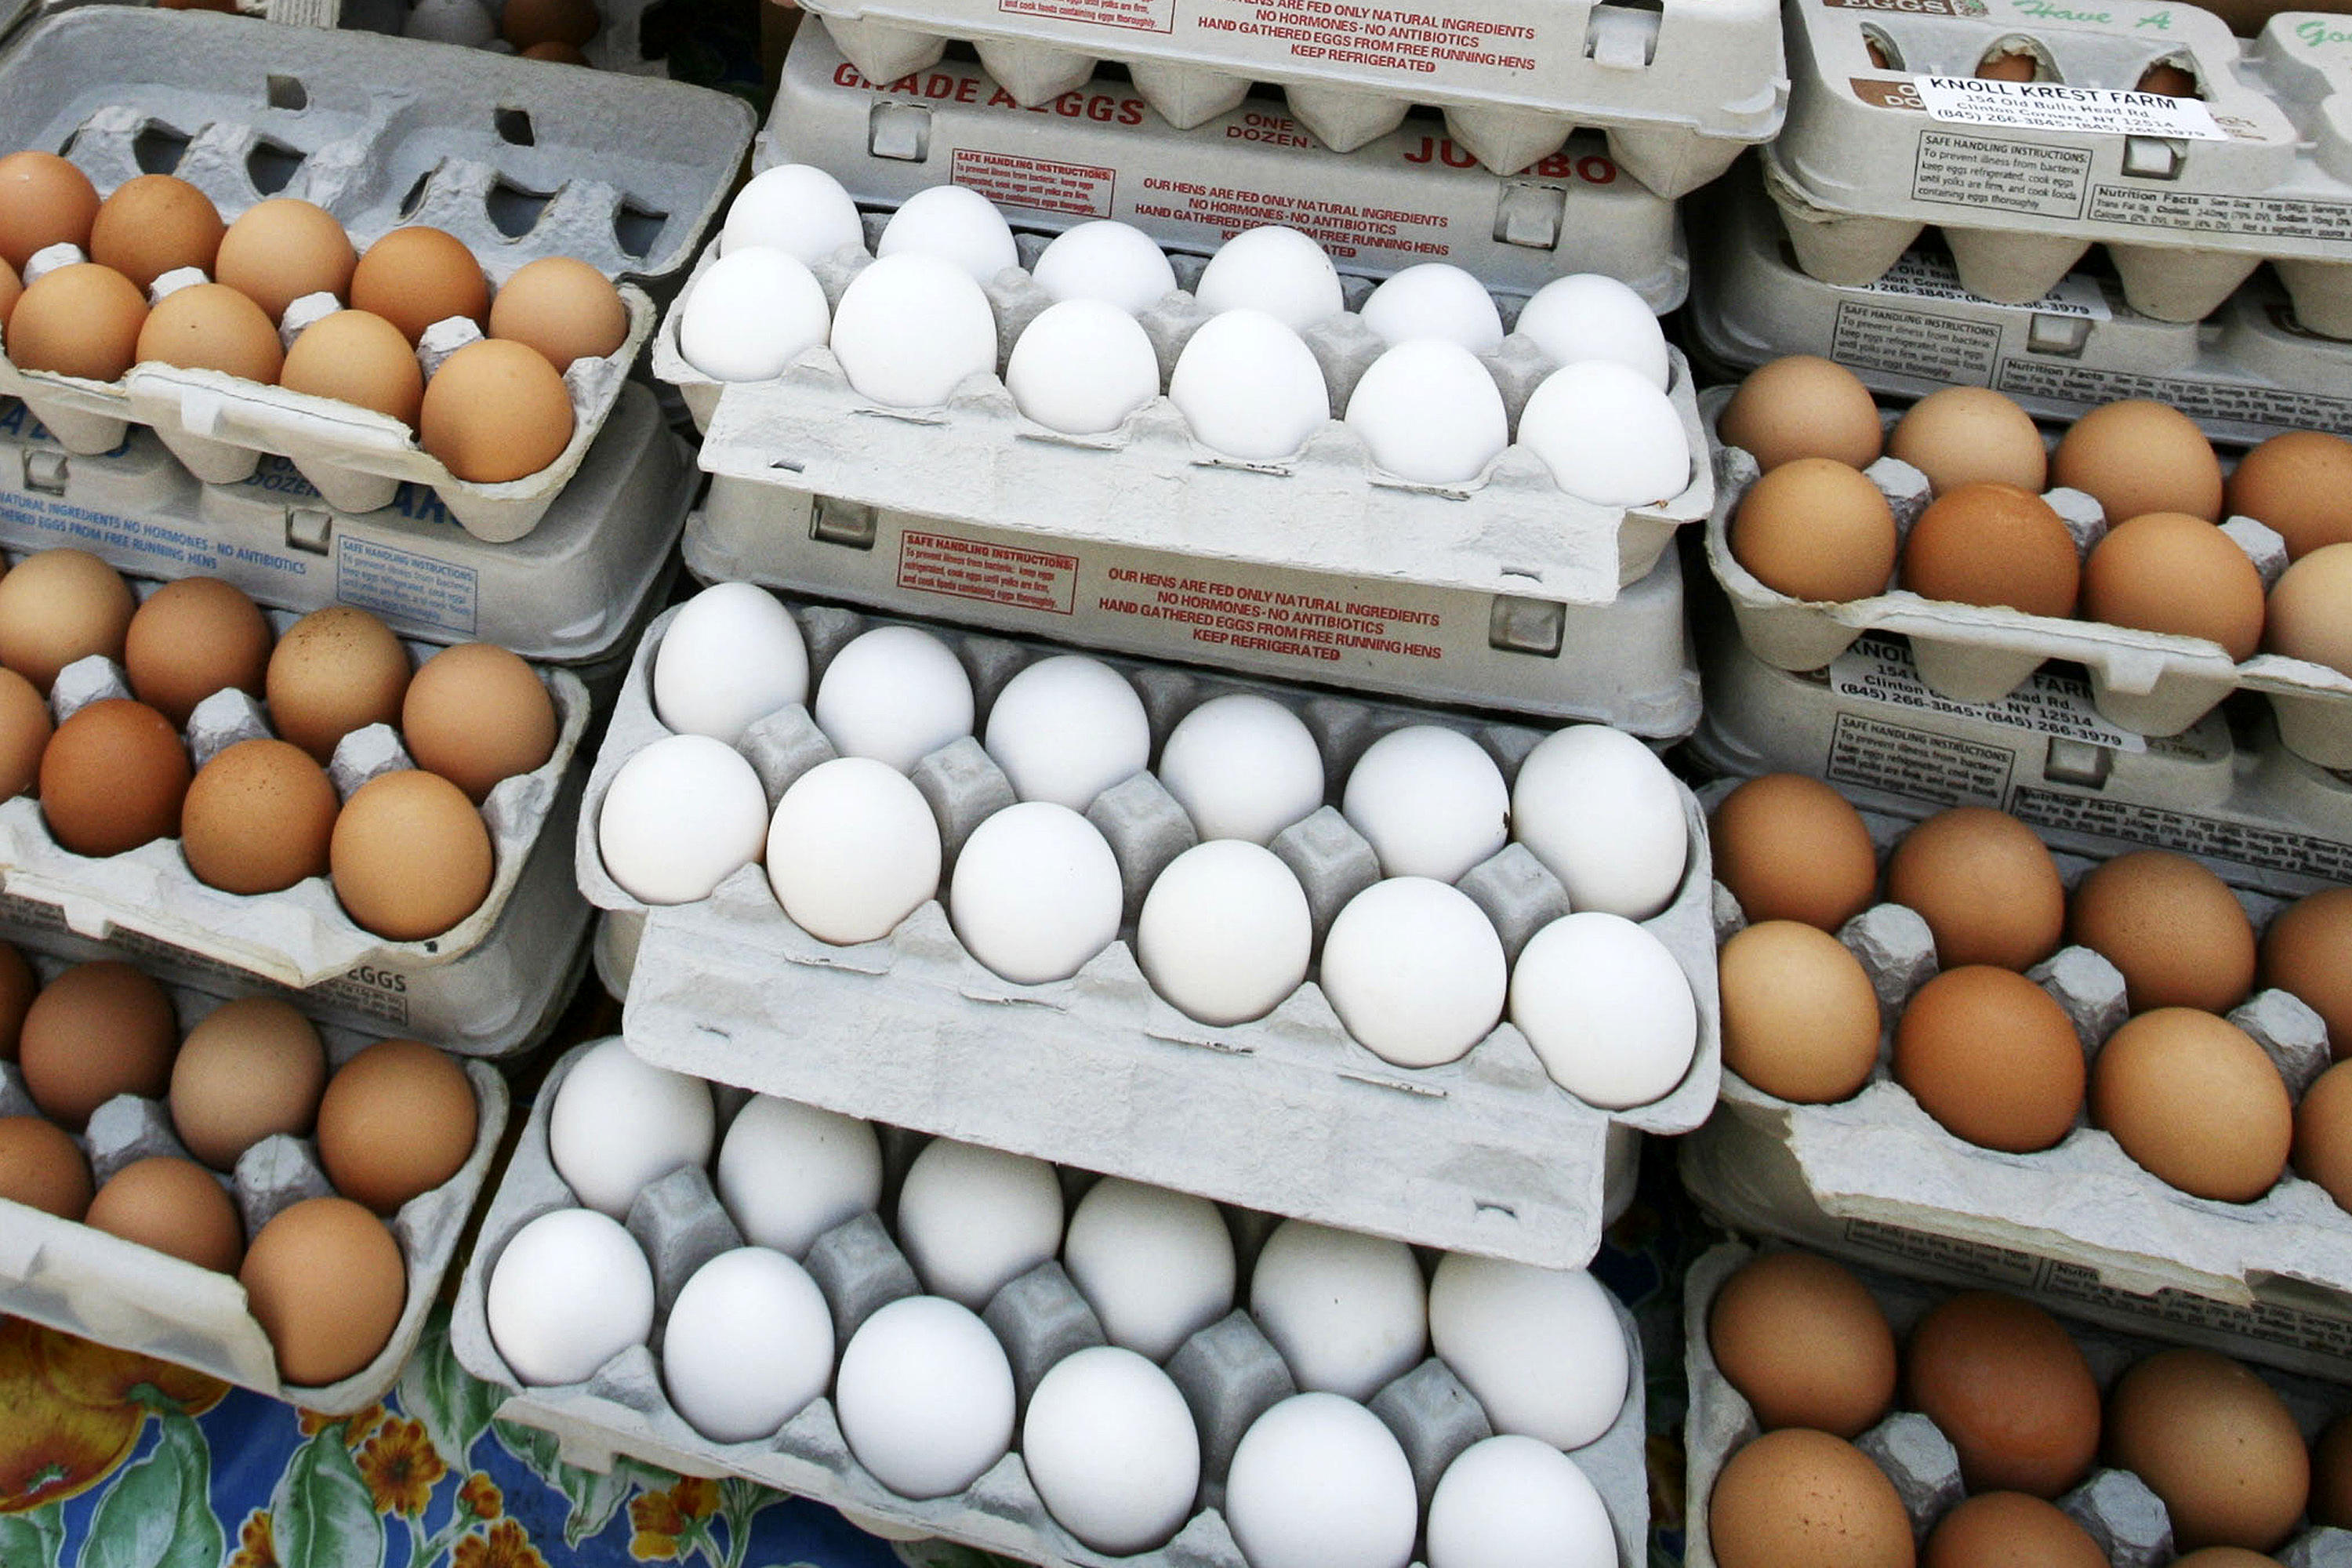 وضعیت بازار تخم مرغ تا پایان سال چگونه است؟